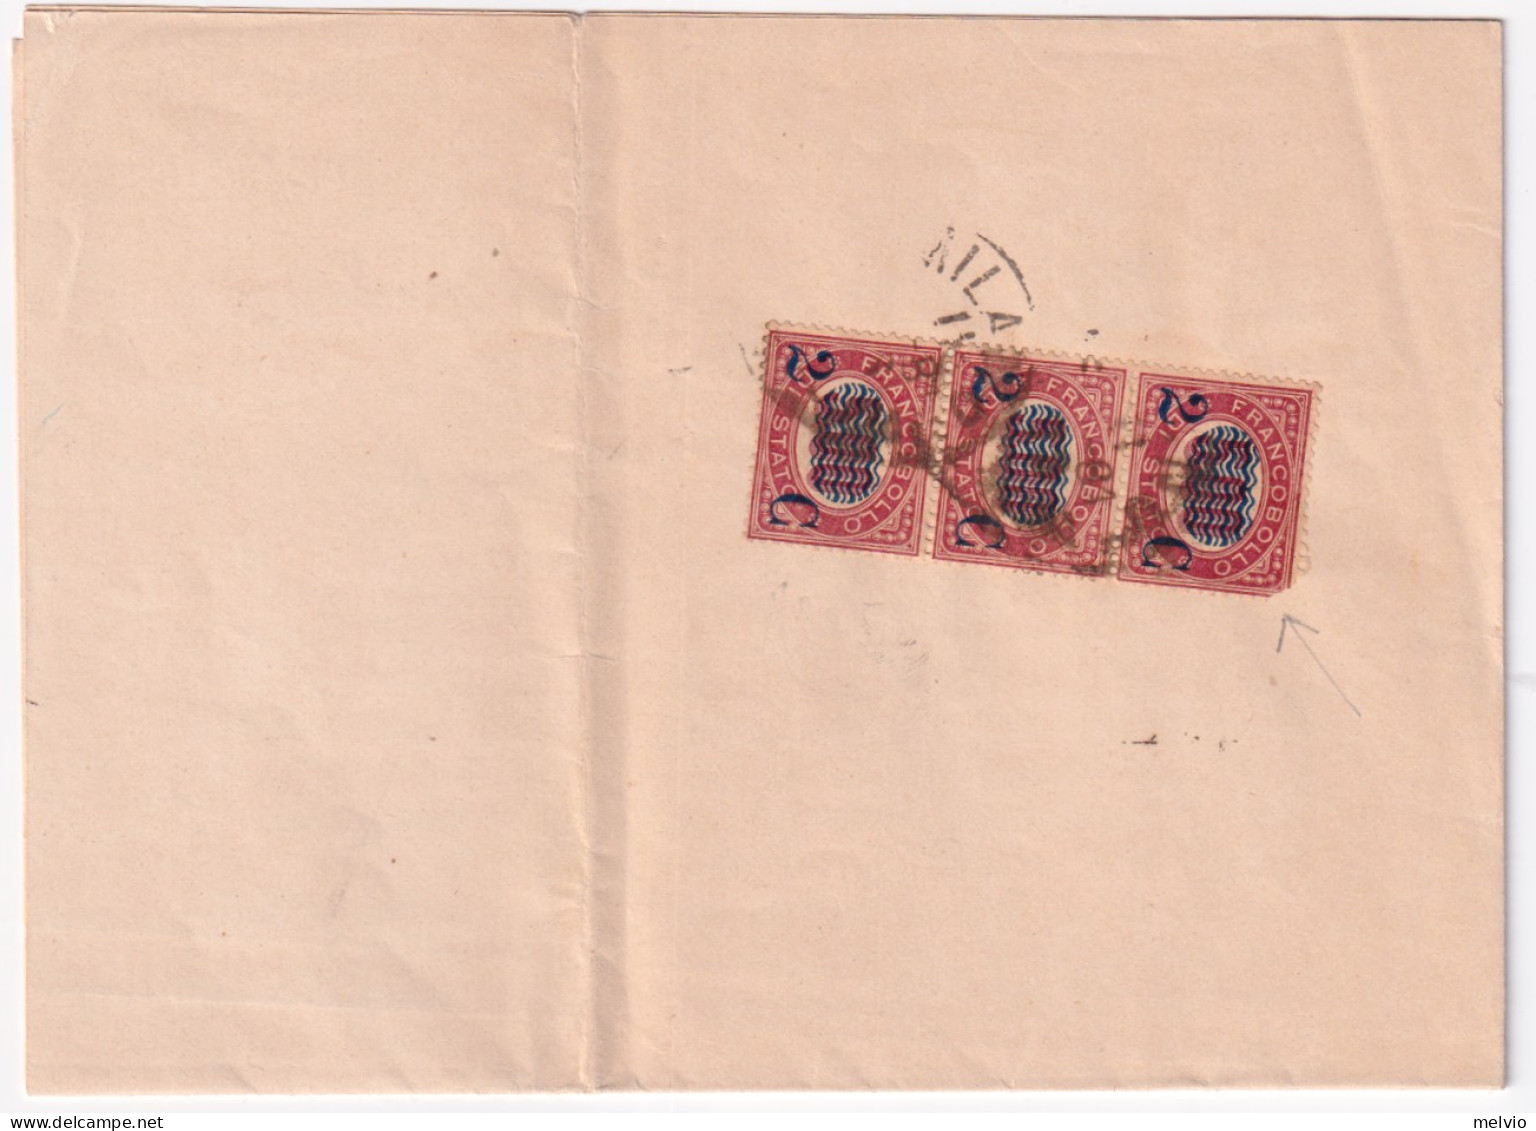 1881-SERVIZI Sopr. Striscia 3 C.2/5,00 (35 Uno Difett.) Su Stampe Milano (11.3) - Marcophilia